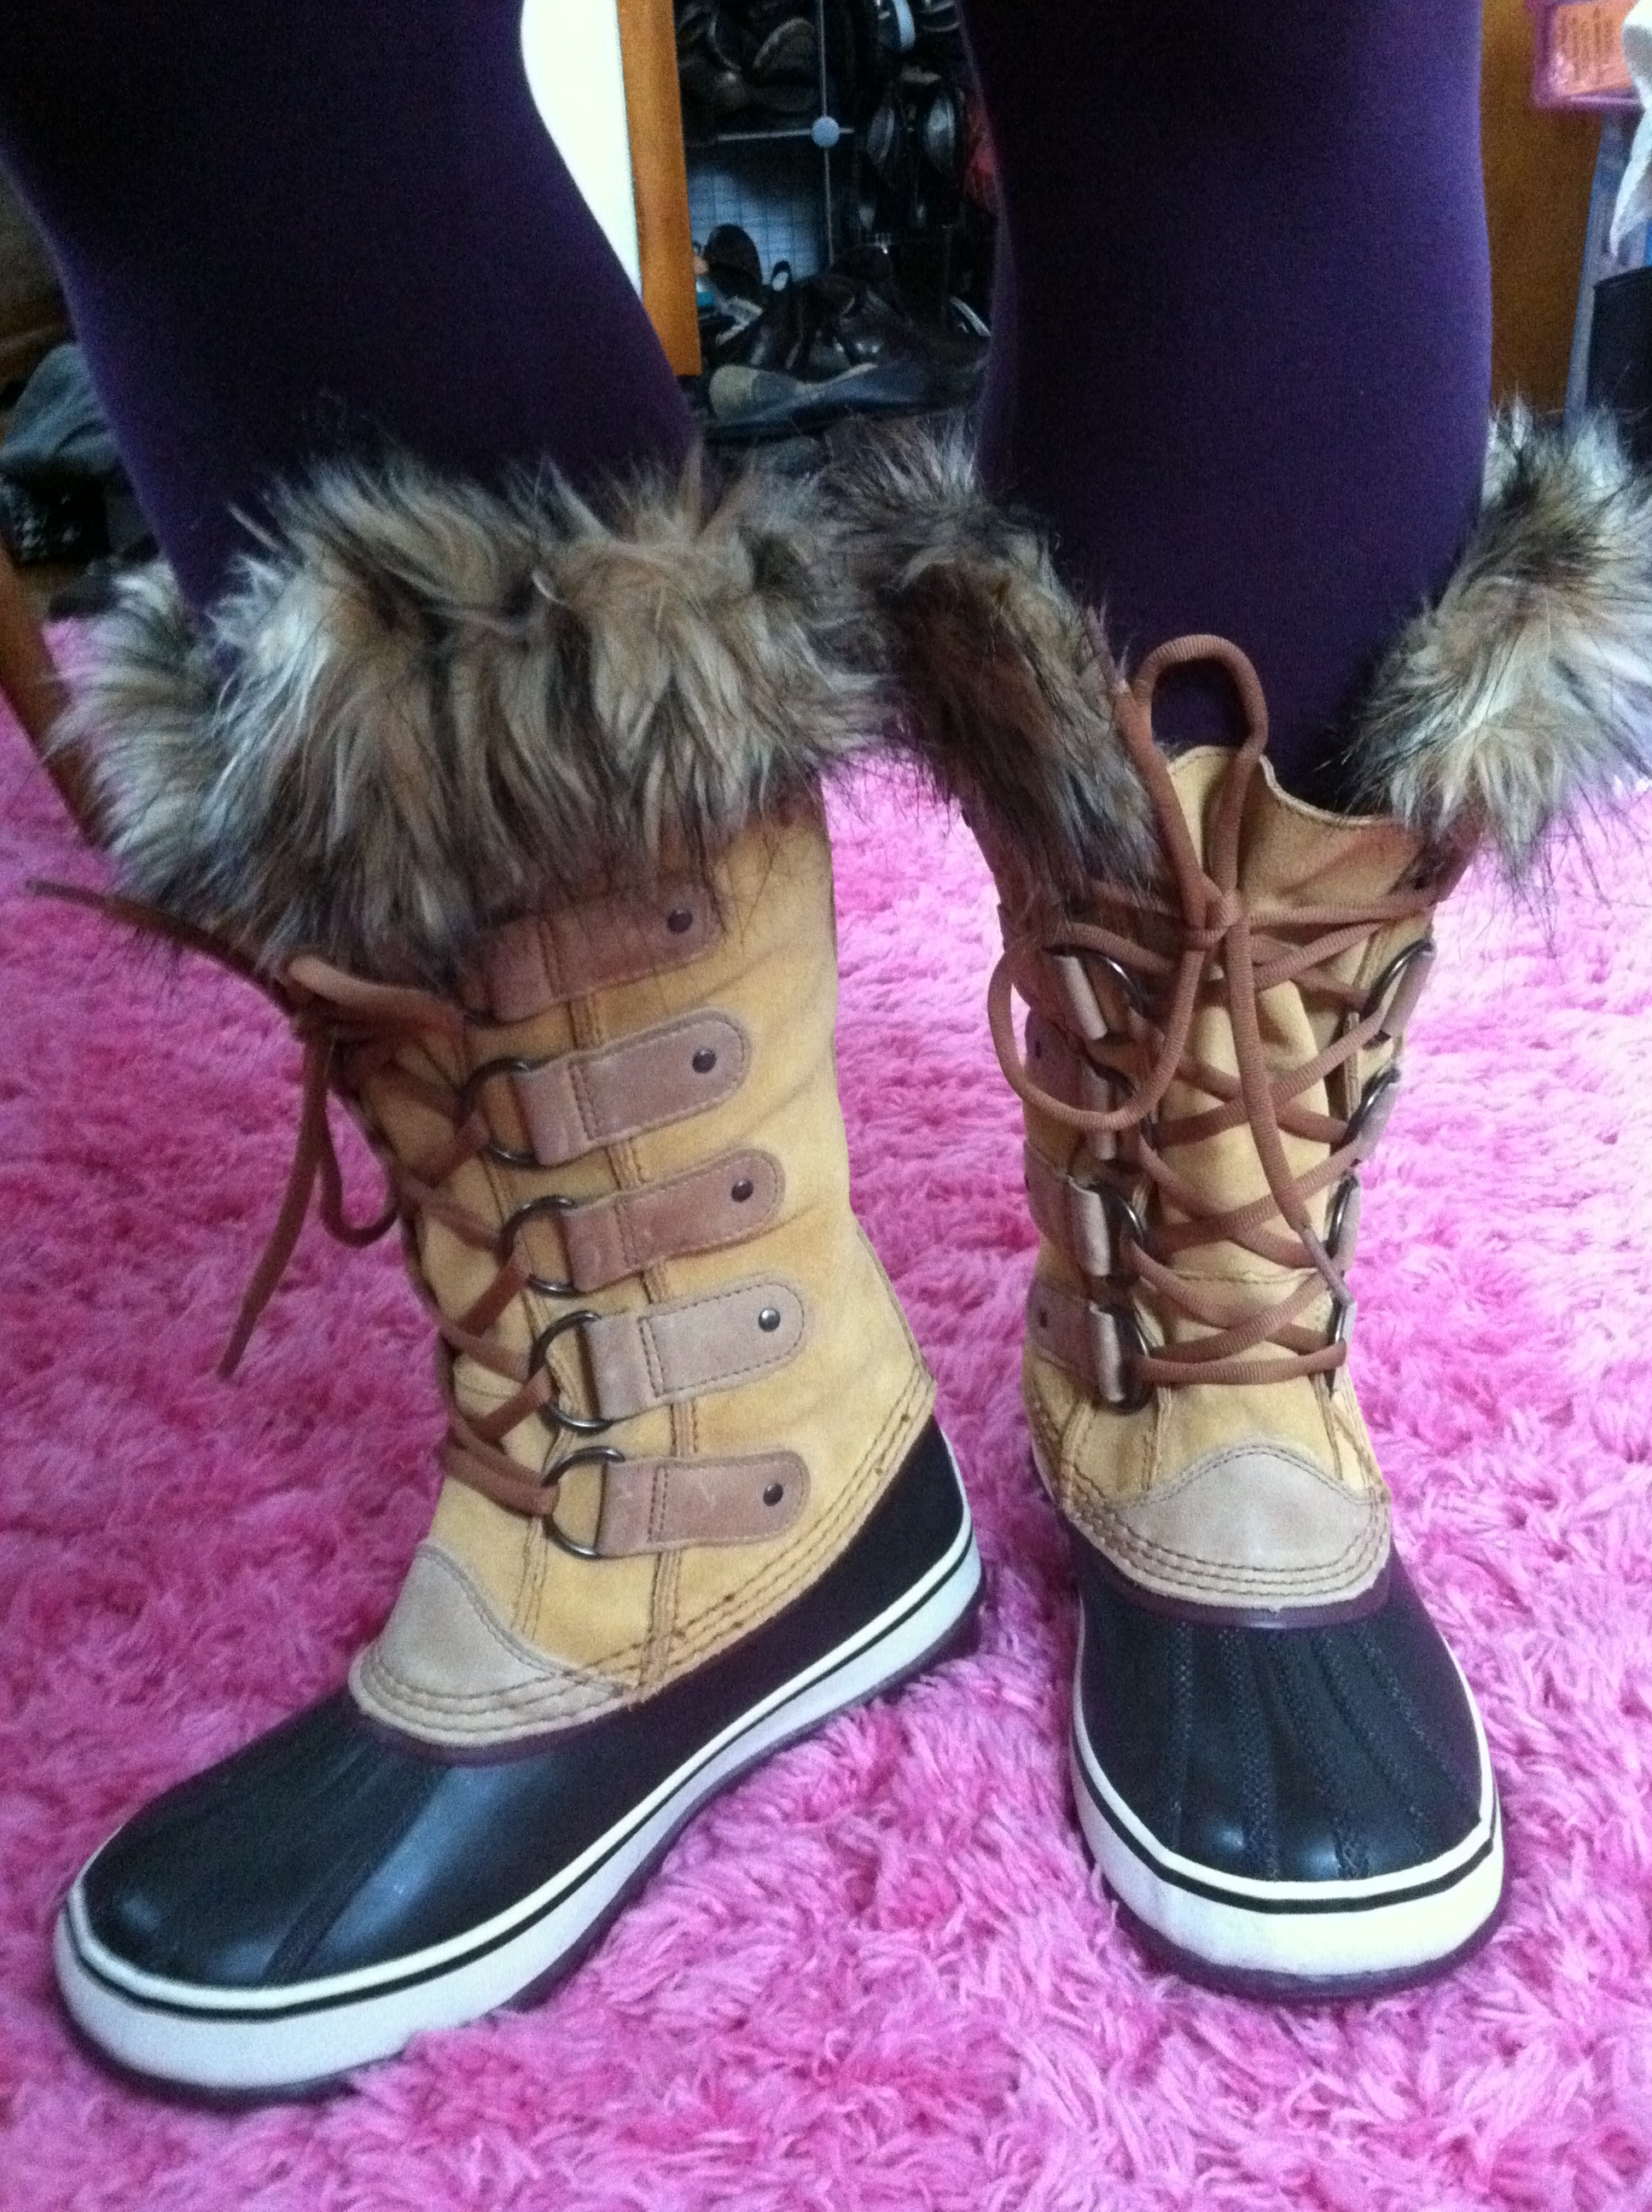 sorel women's joan of arctic waterproof winter boots